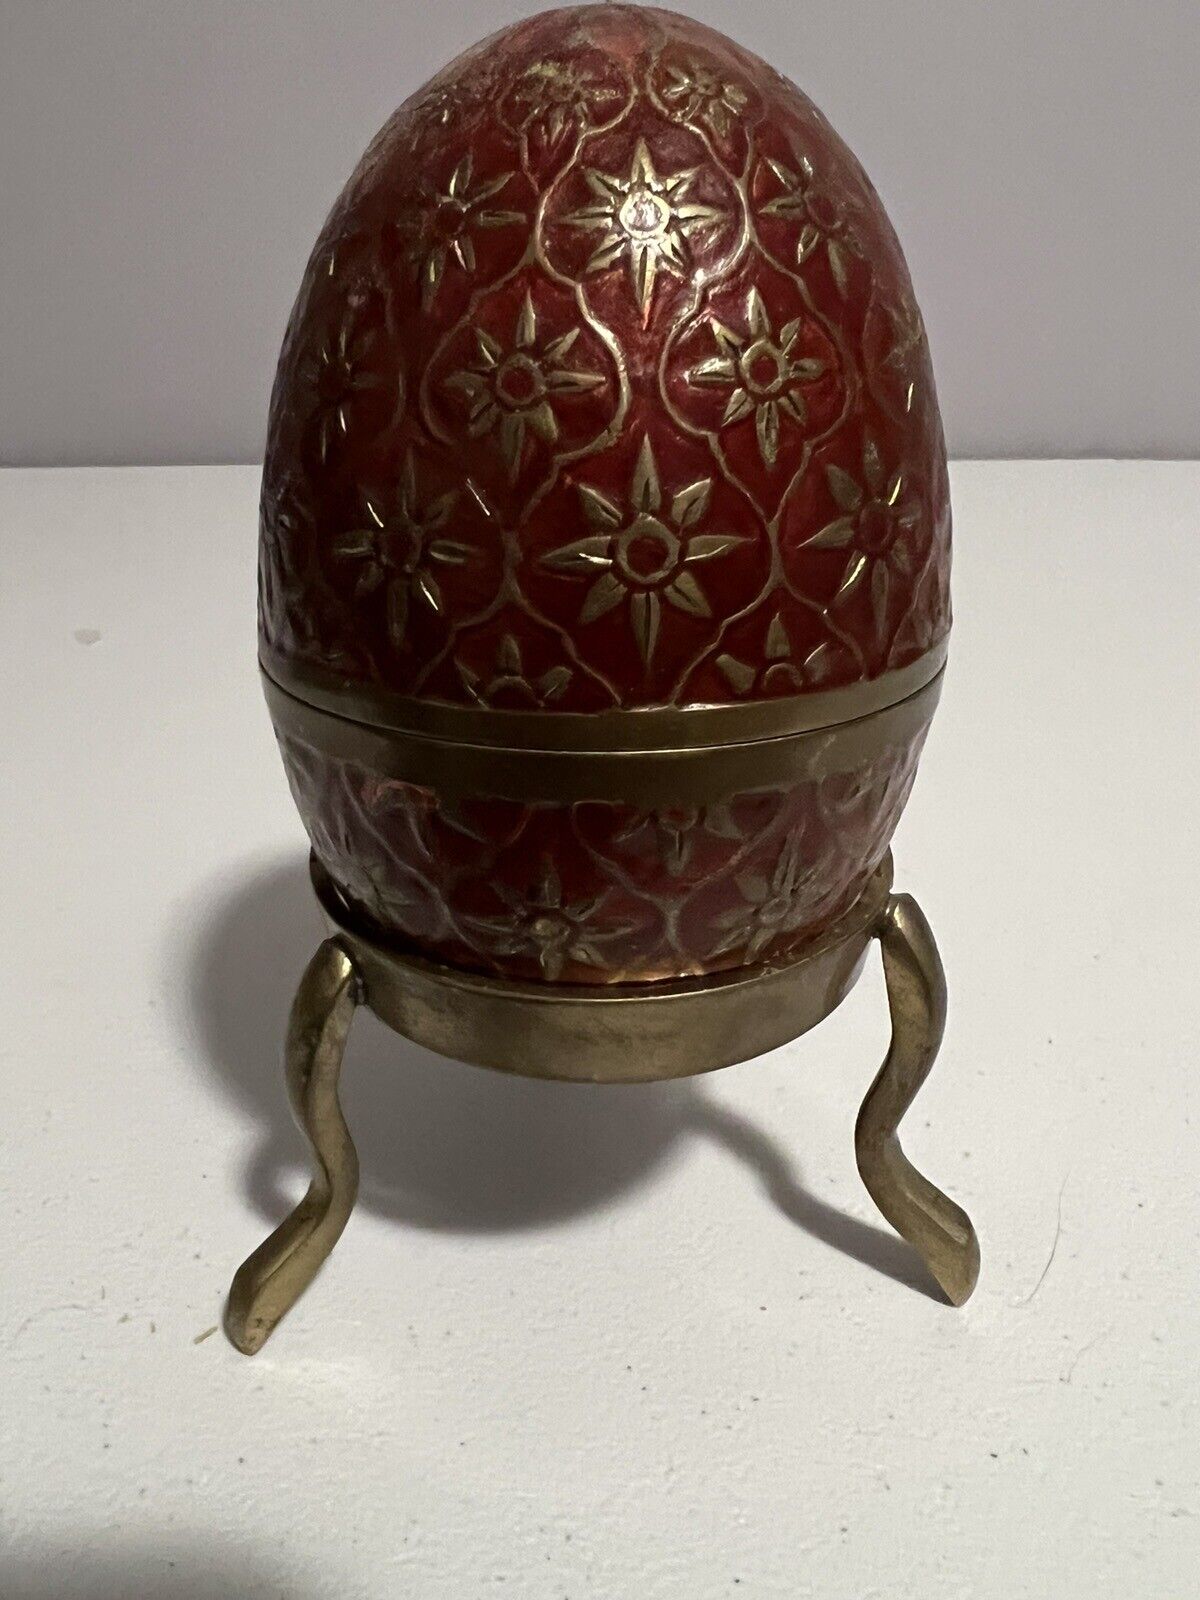 Vintage Floral Cloisonné Enamel 5”X3.5” Egg Shaped Trinket Box Flowers Red &Gold